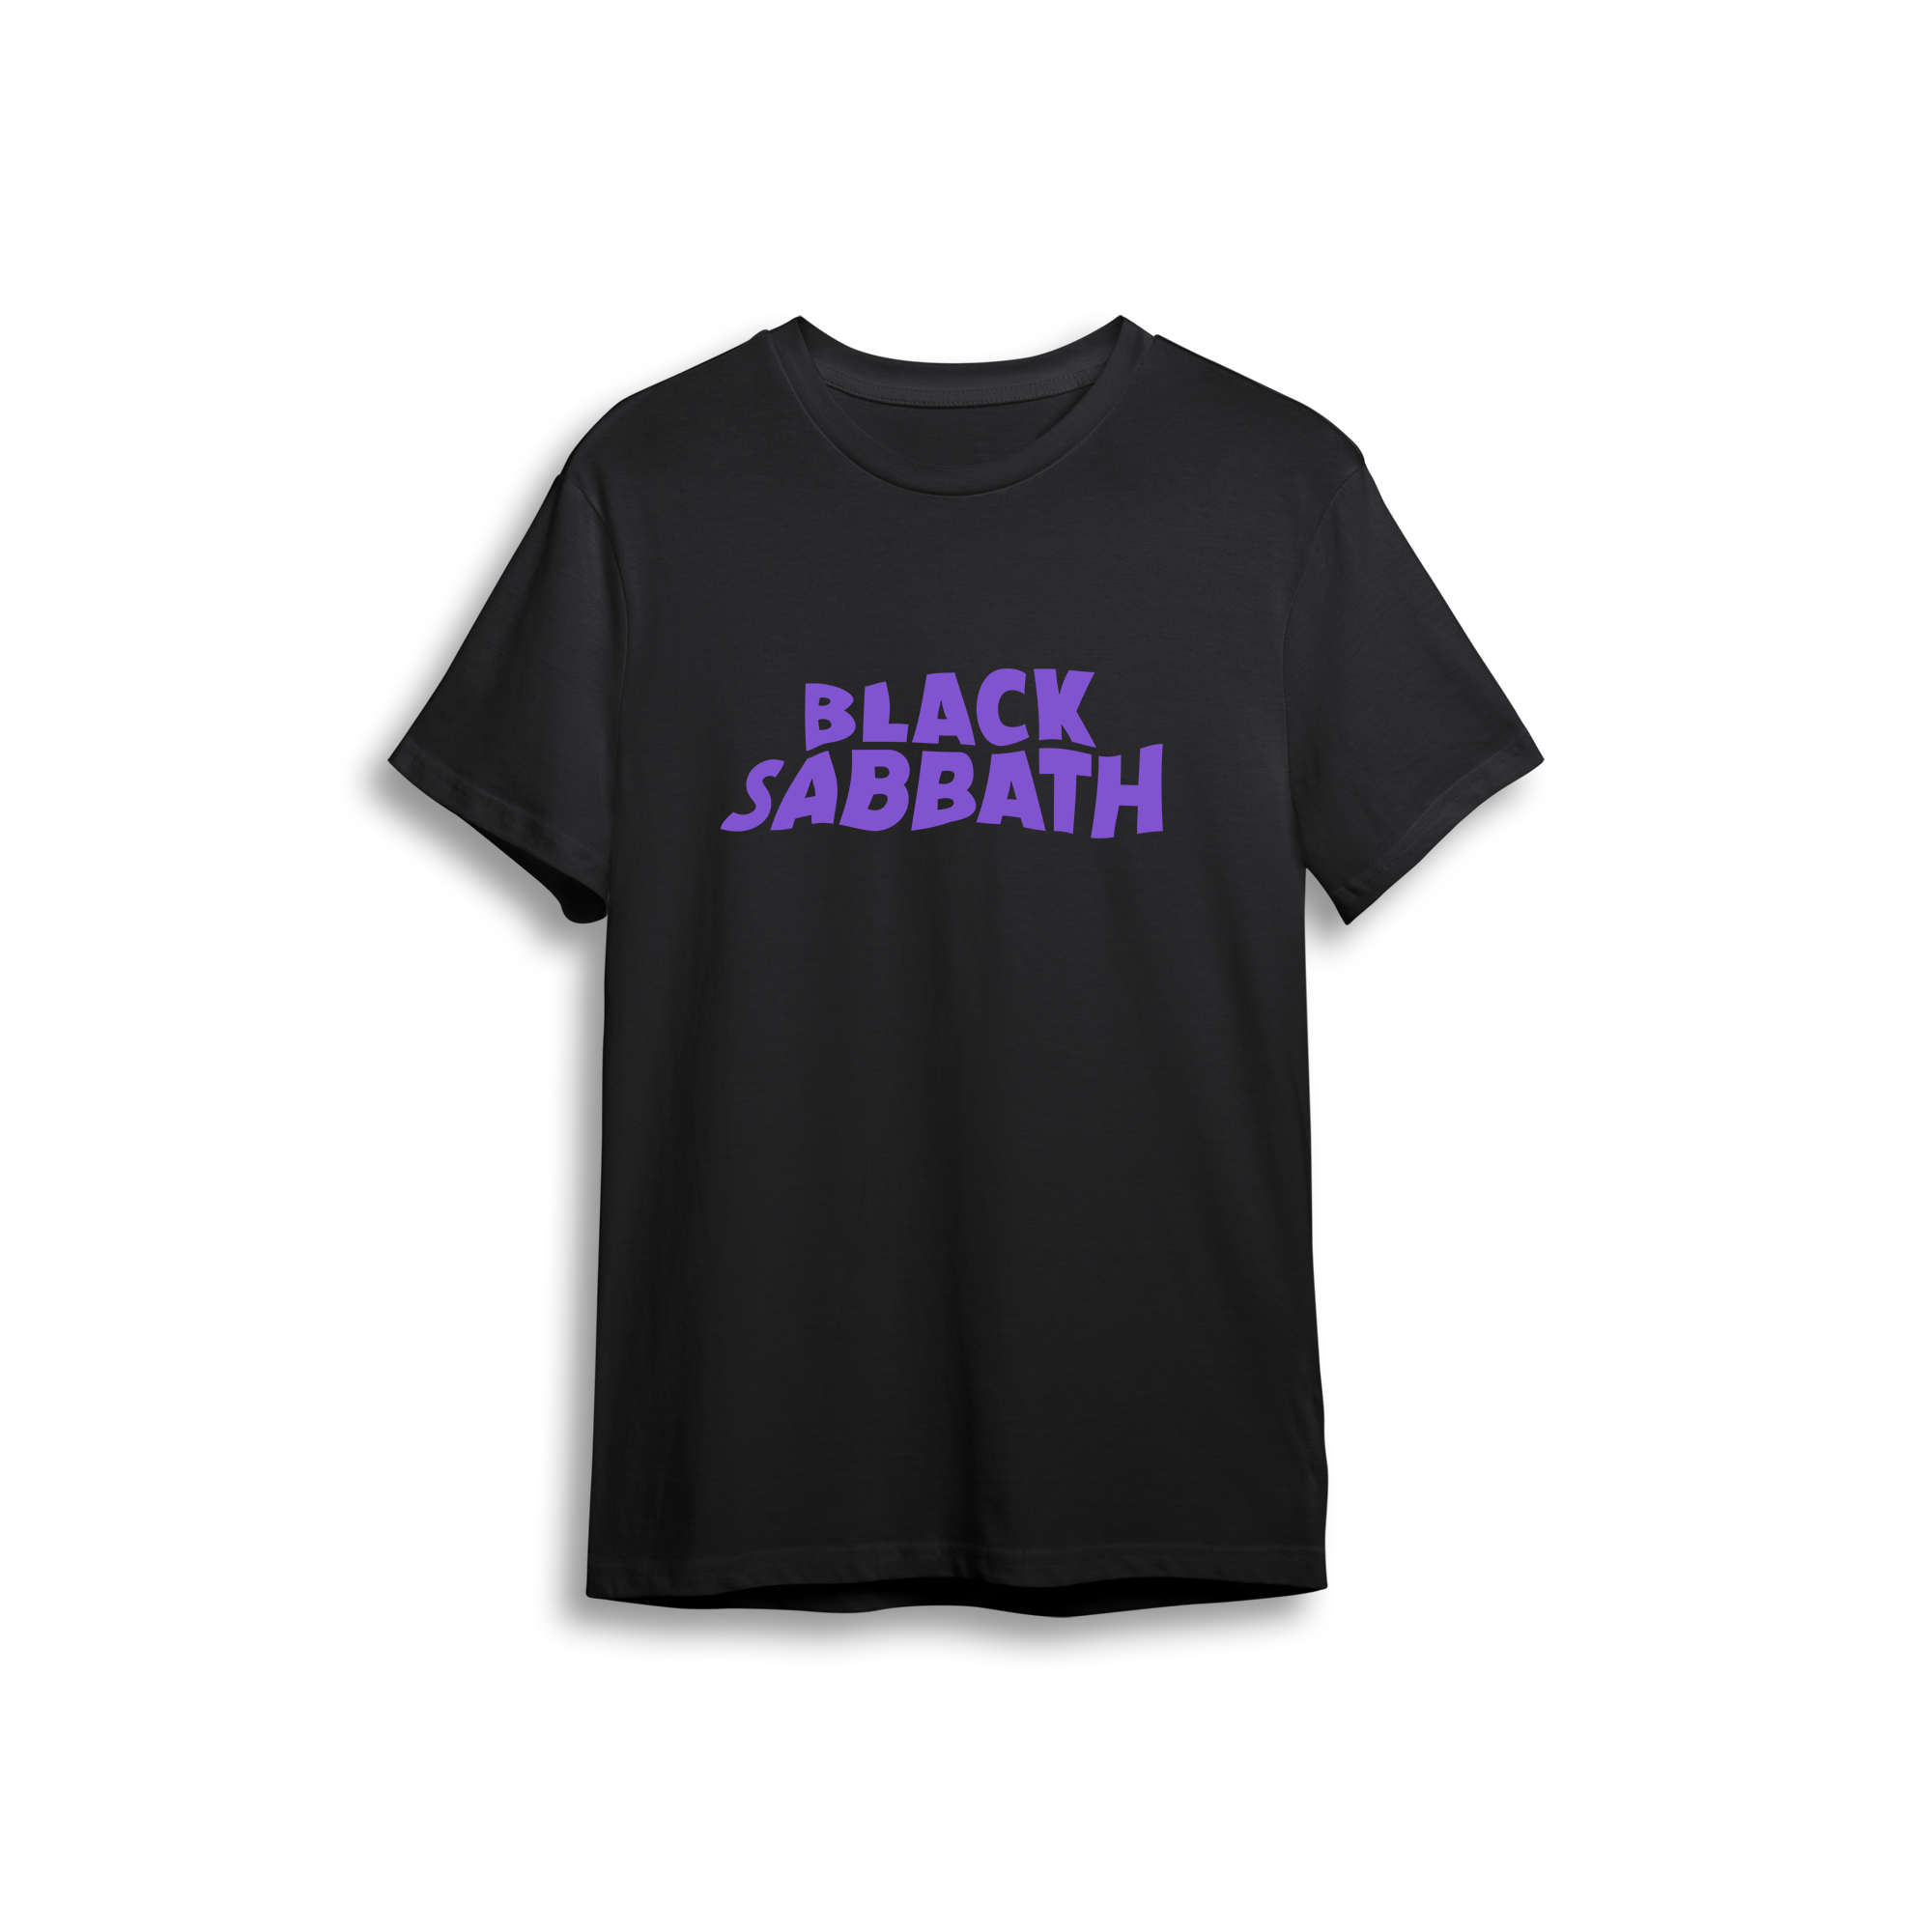 Black Sabbath - Street Wear Collection